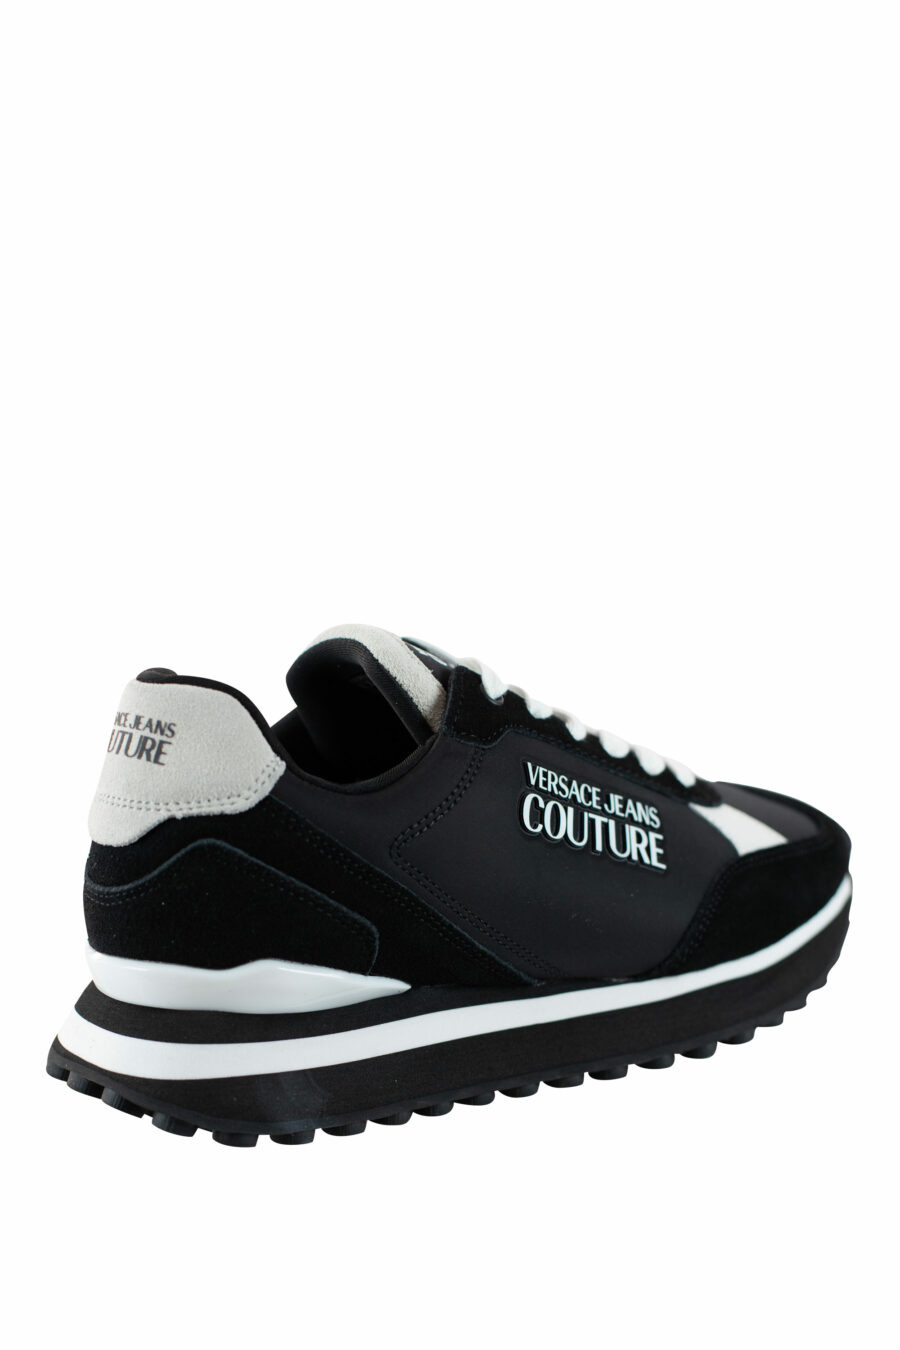 Zapatillas negras con beige "spyke" con logo blanco - IMG 4533